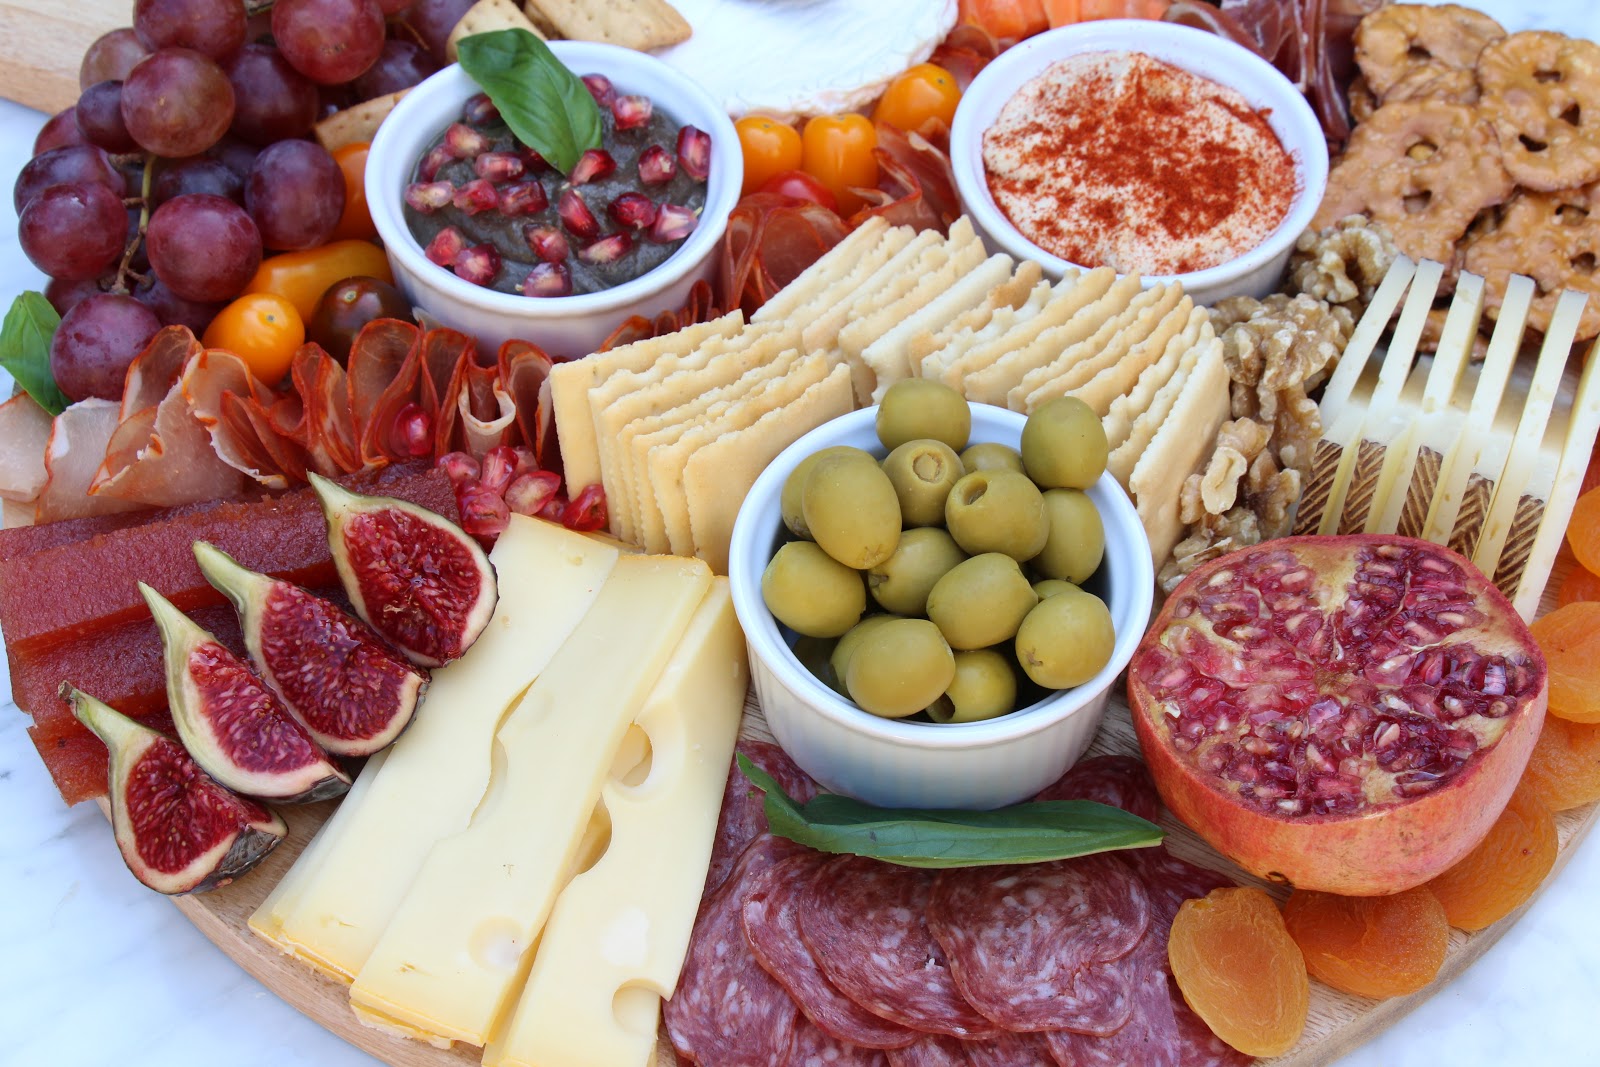 Mardefiesta: Como preparar una tabla de quesos y embutidos perfecta